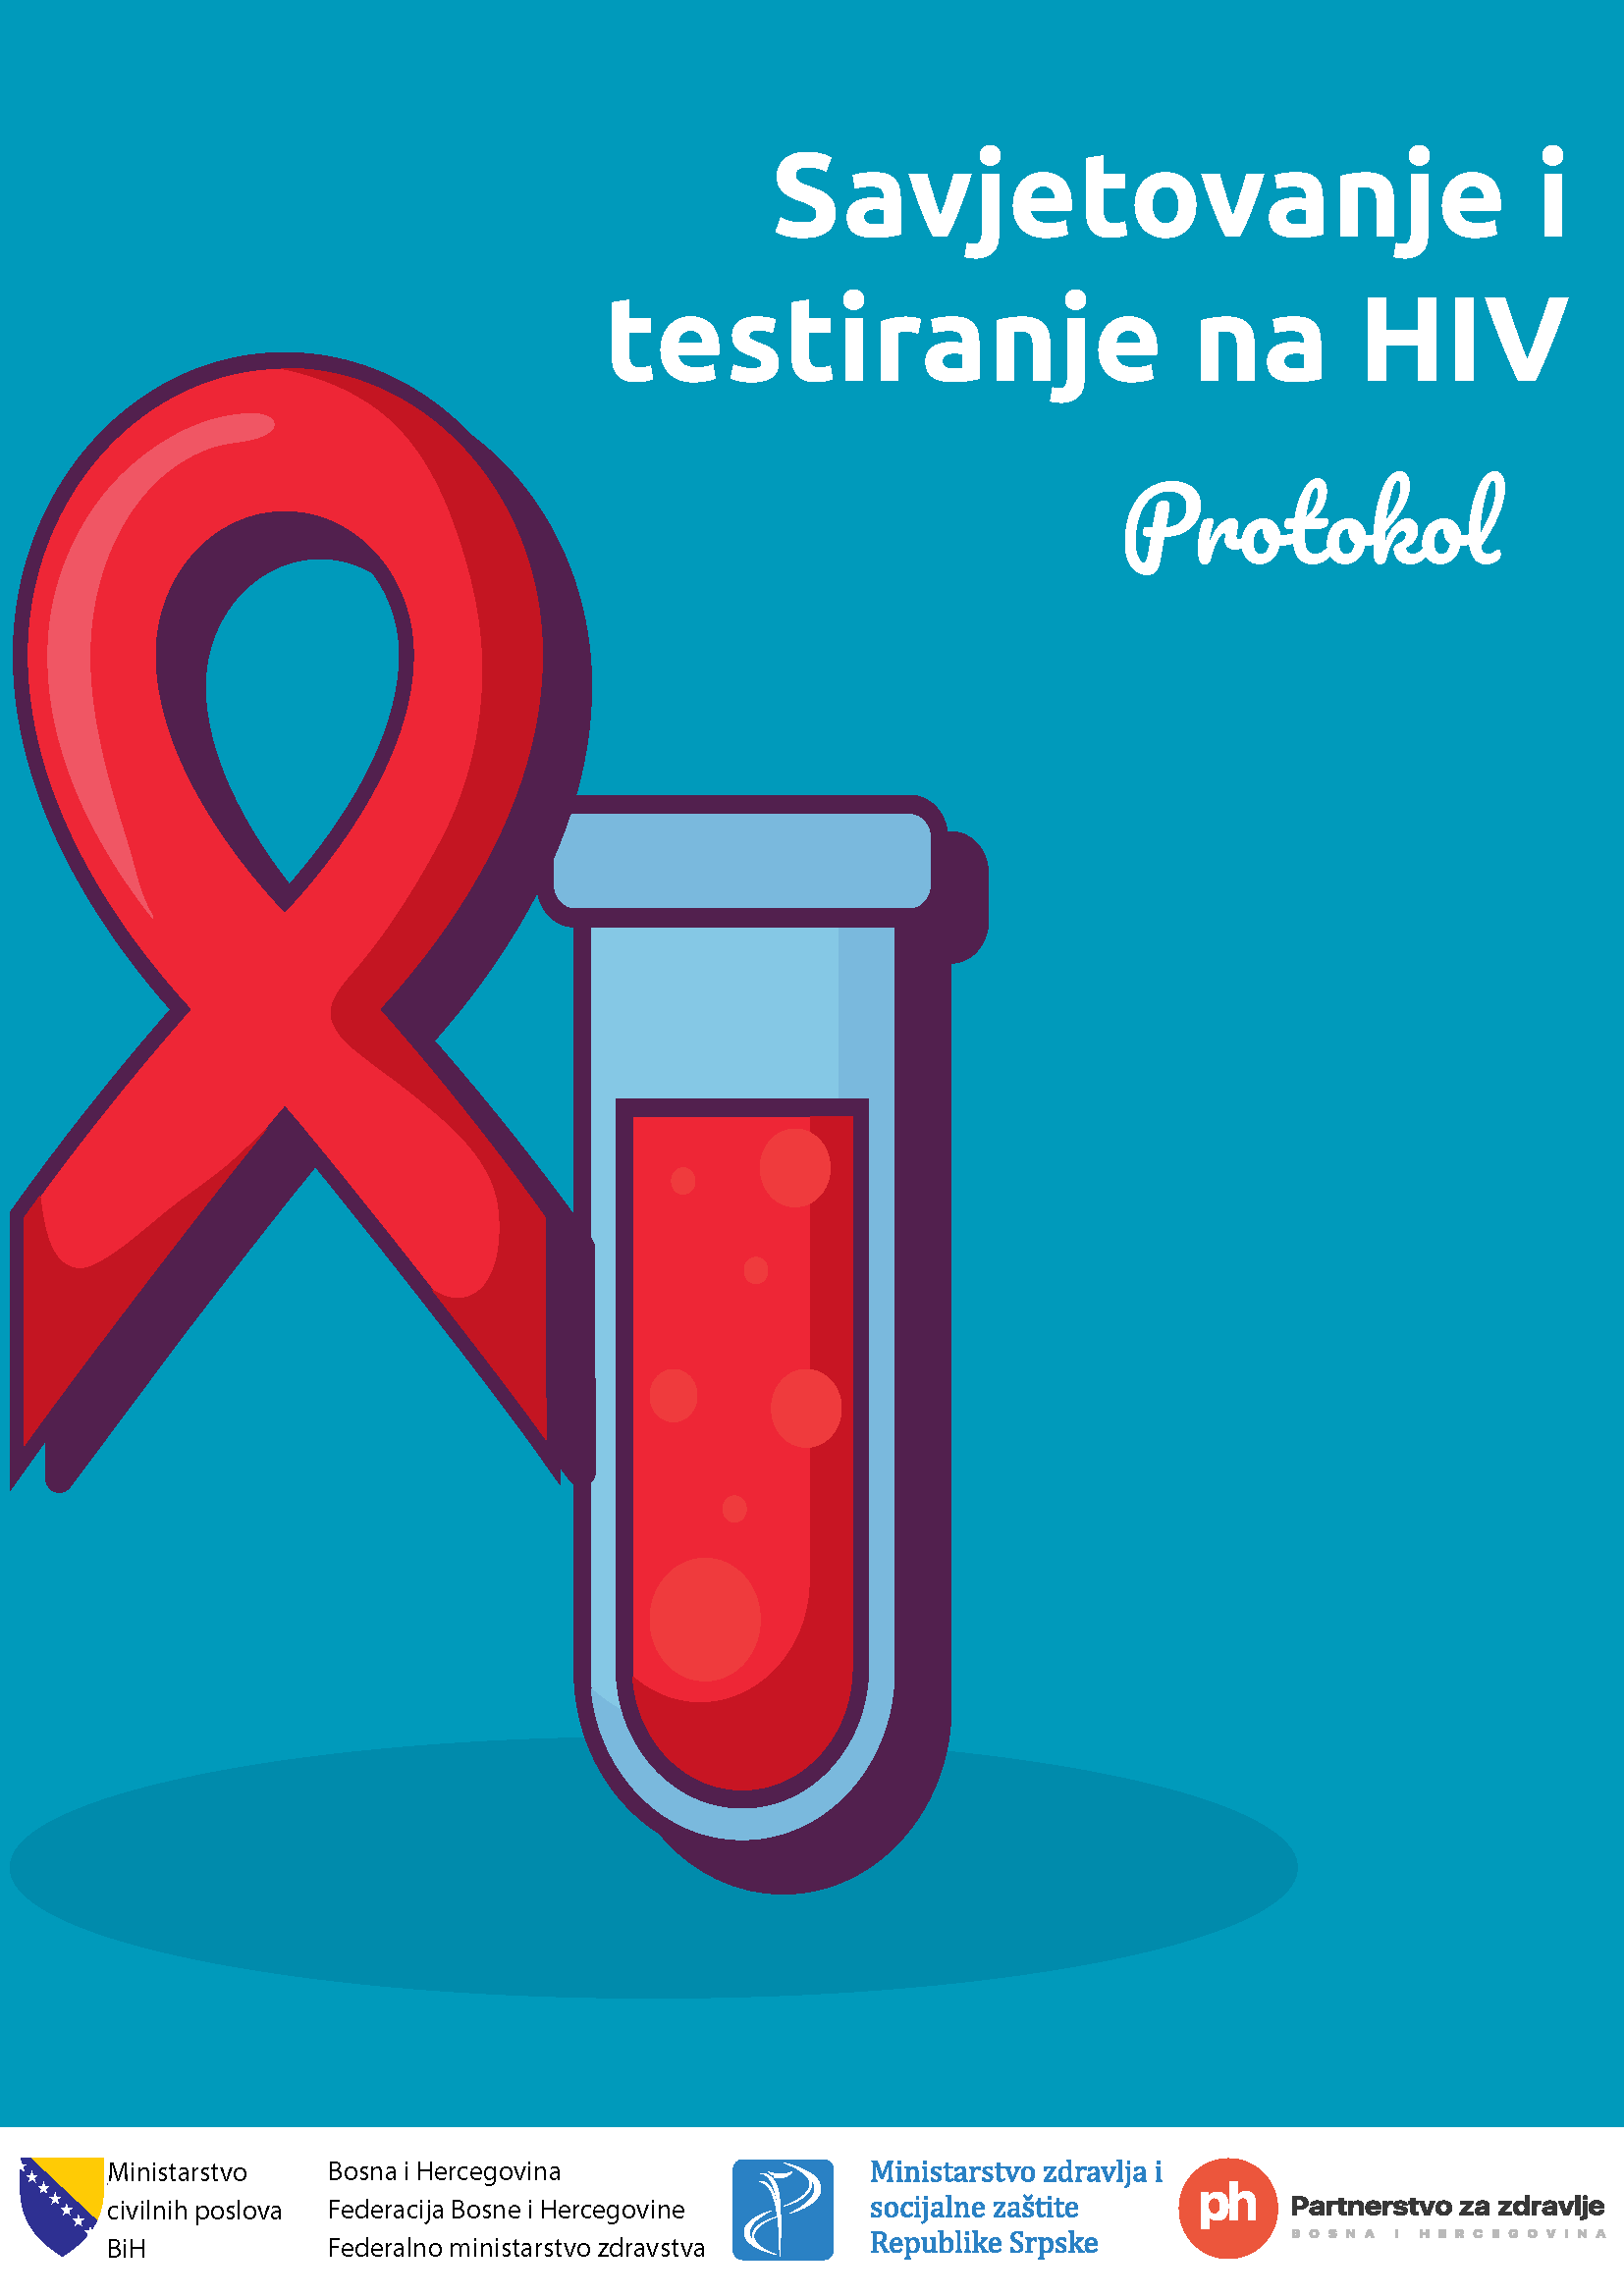 Protokol - Savjetovanje i testiranje na HIV - Hrvatski jezik, 2020. godina